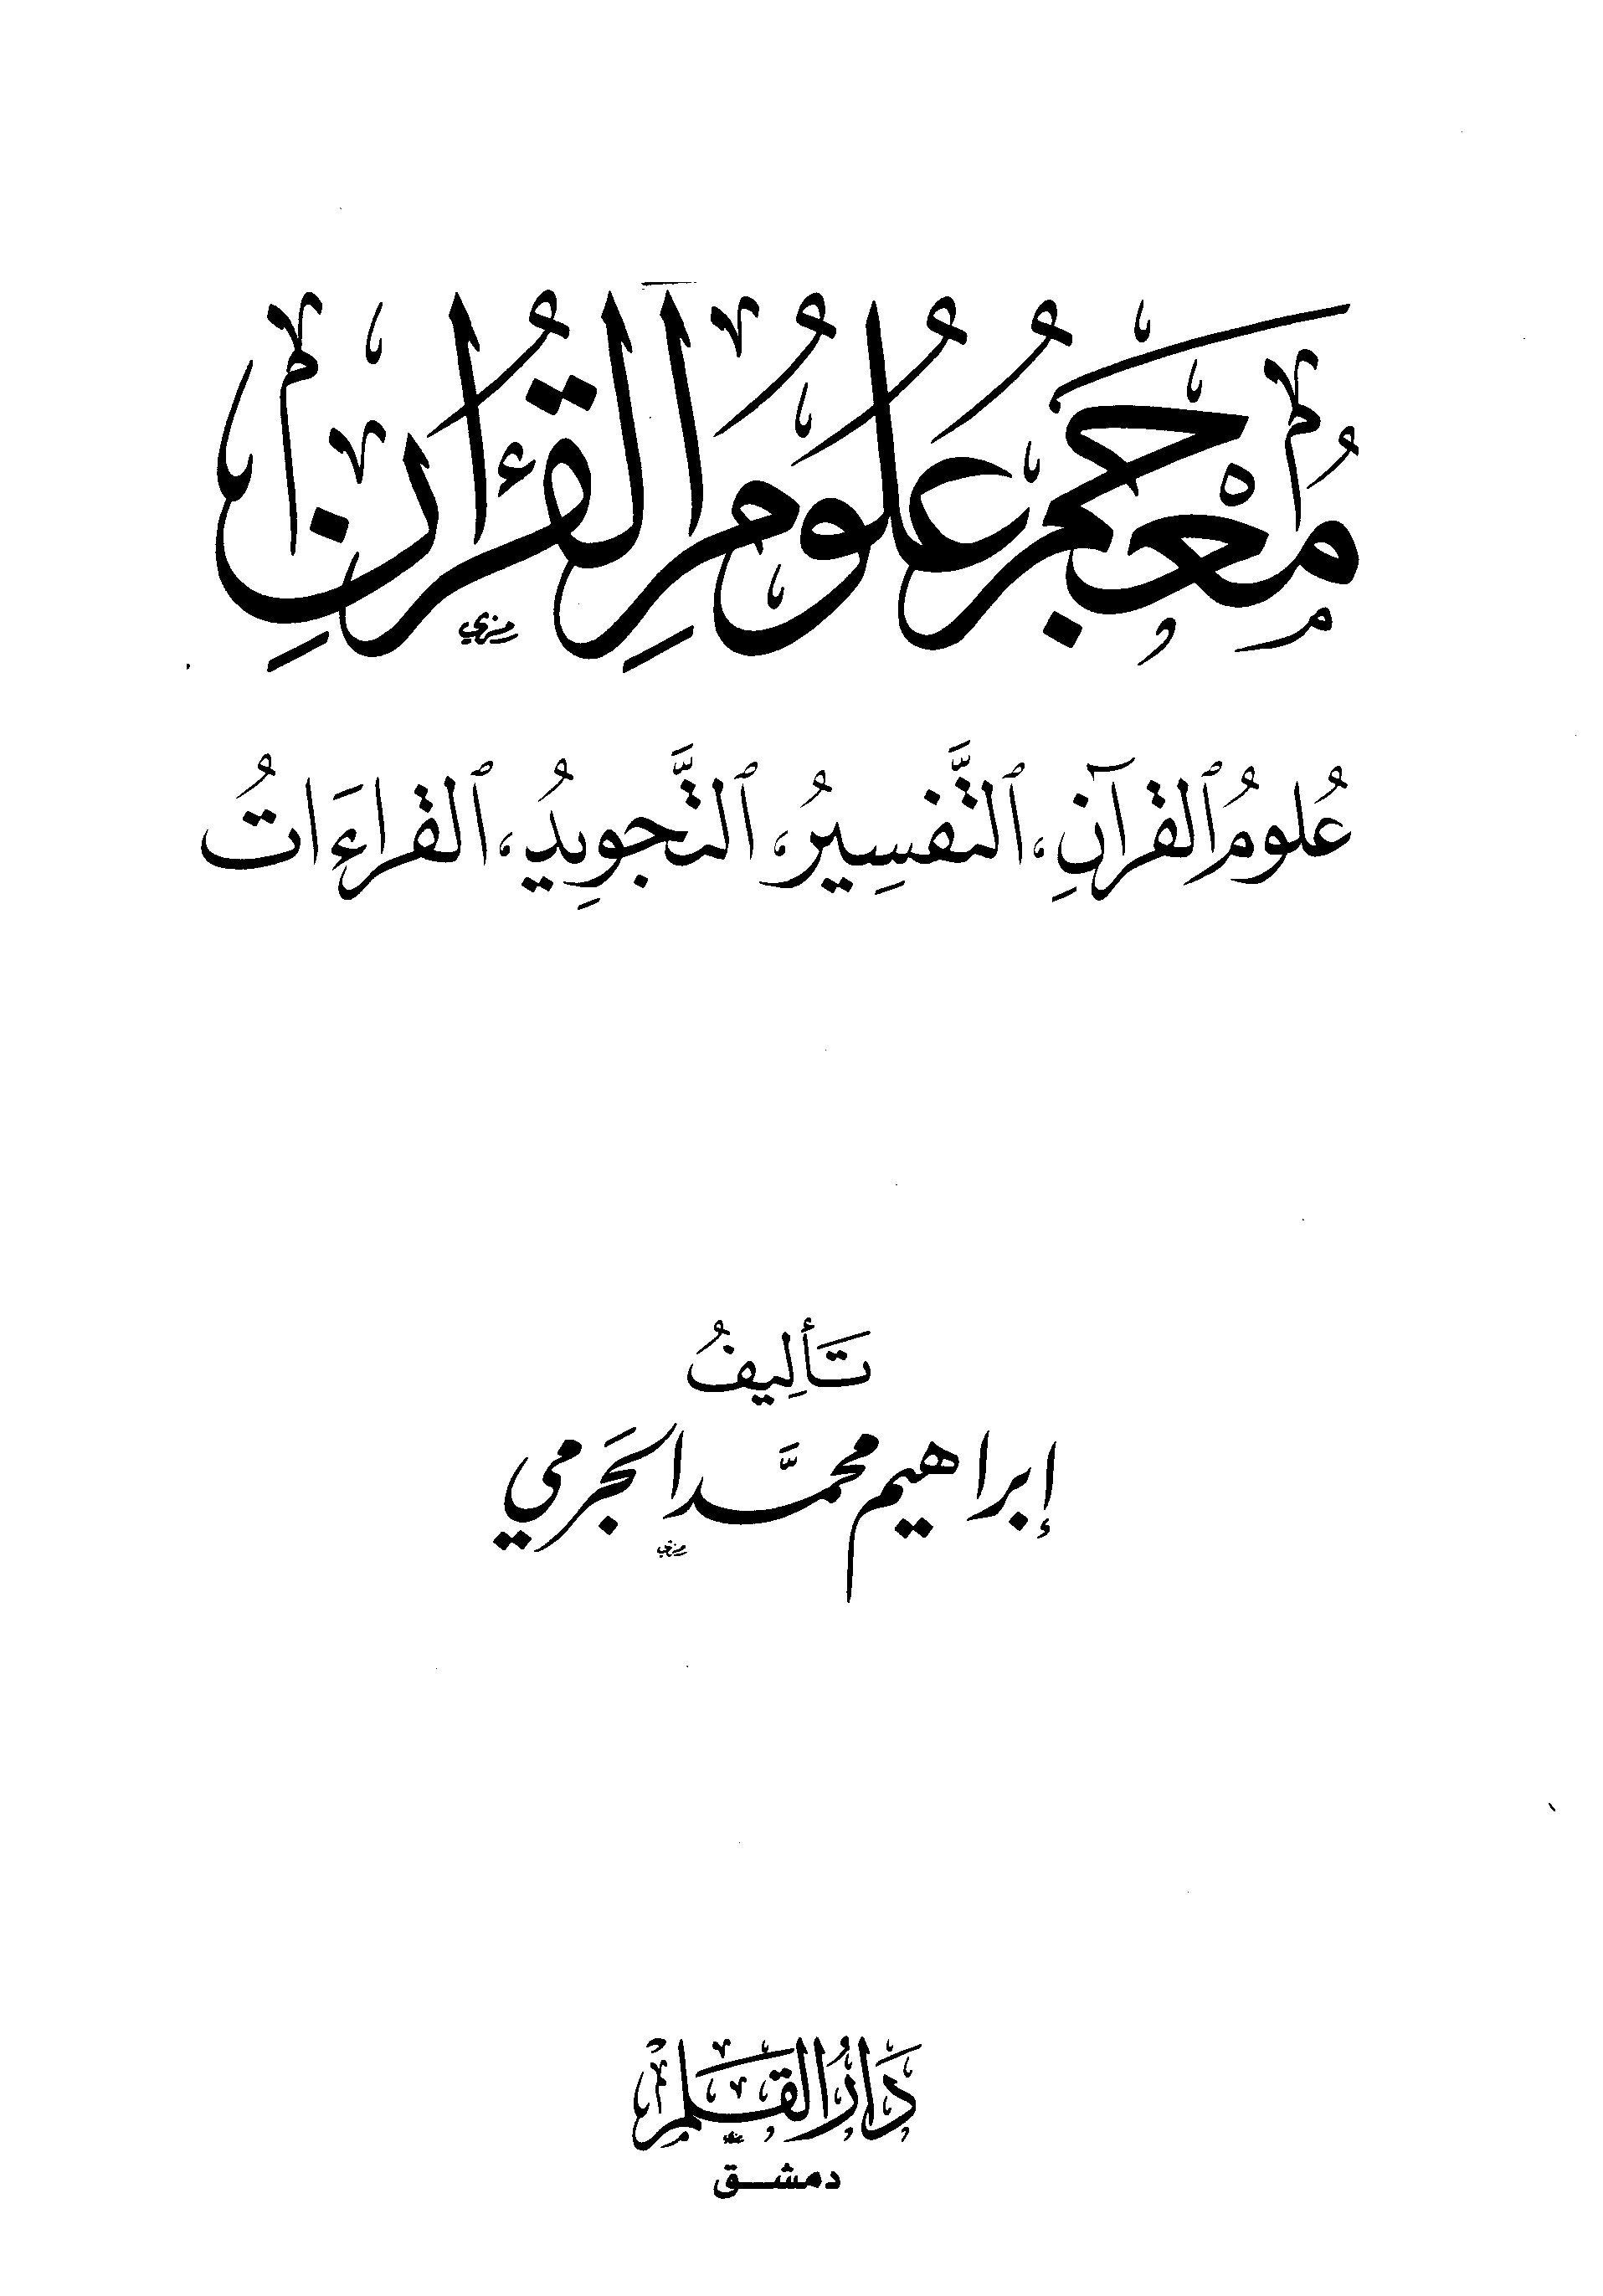 معجم علوم القرآن: علوم القرآن، التفسير، التجويد، القراءات